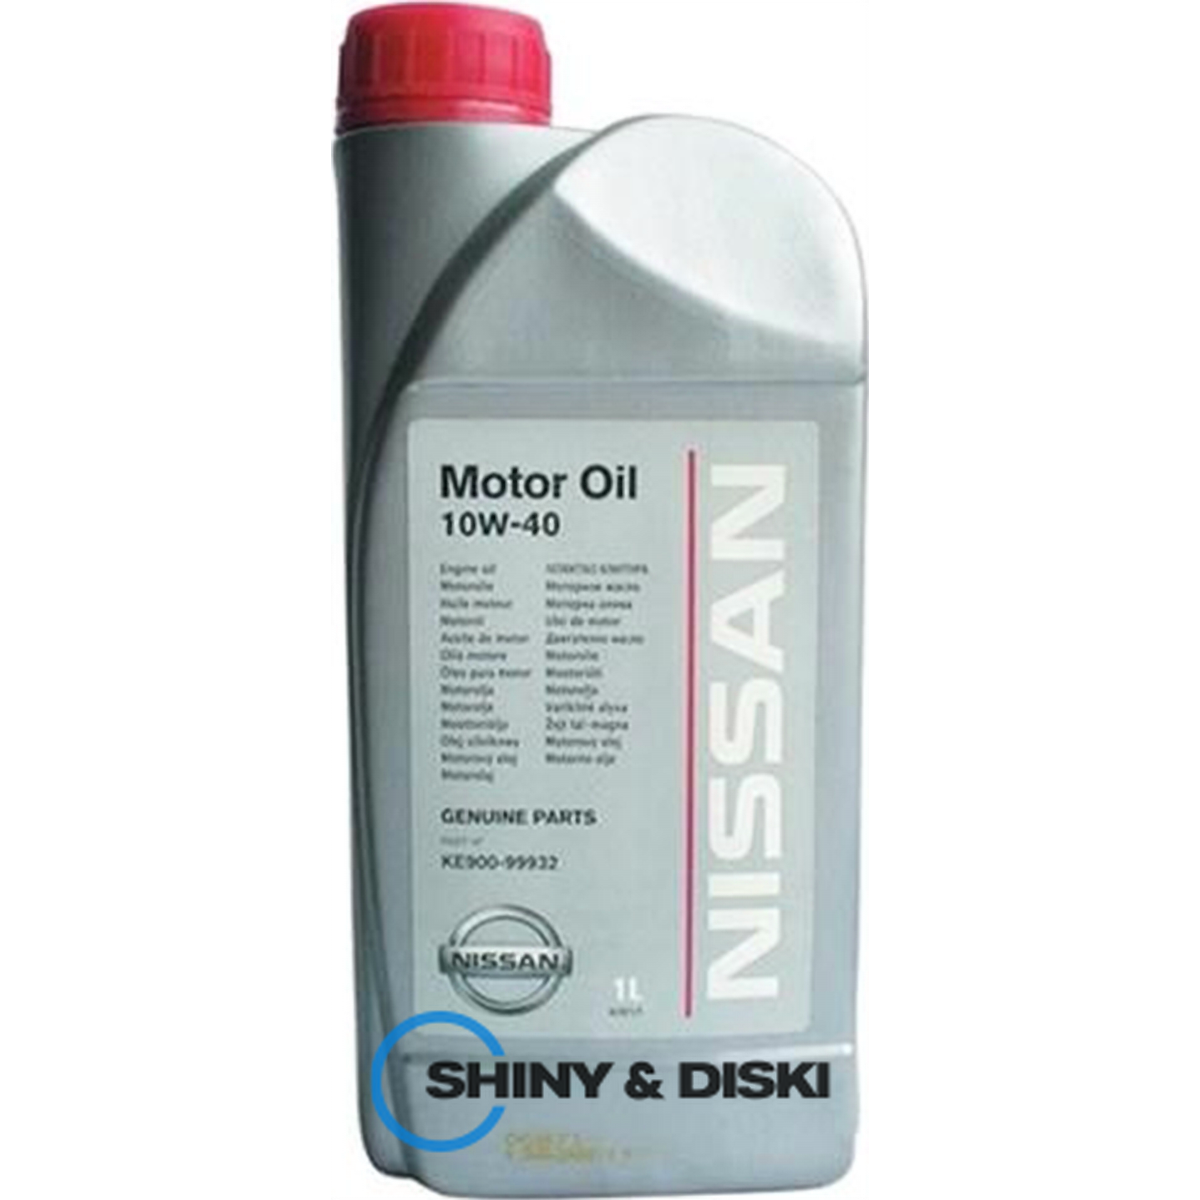 nissan motor oil 10w-40 (1л)